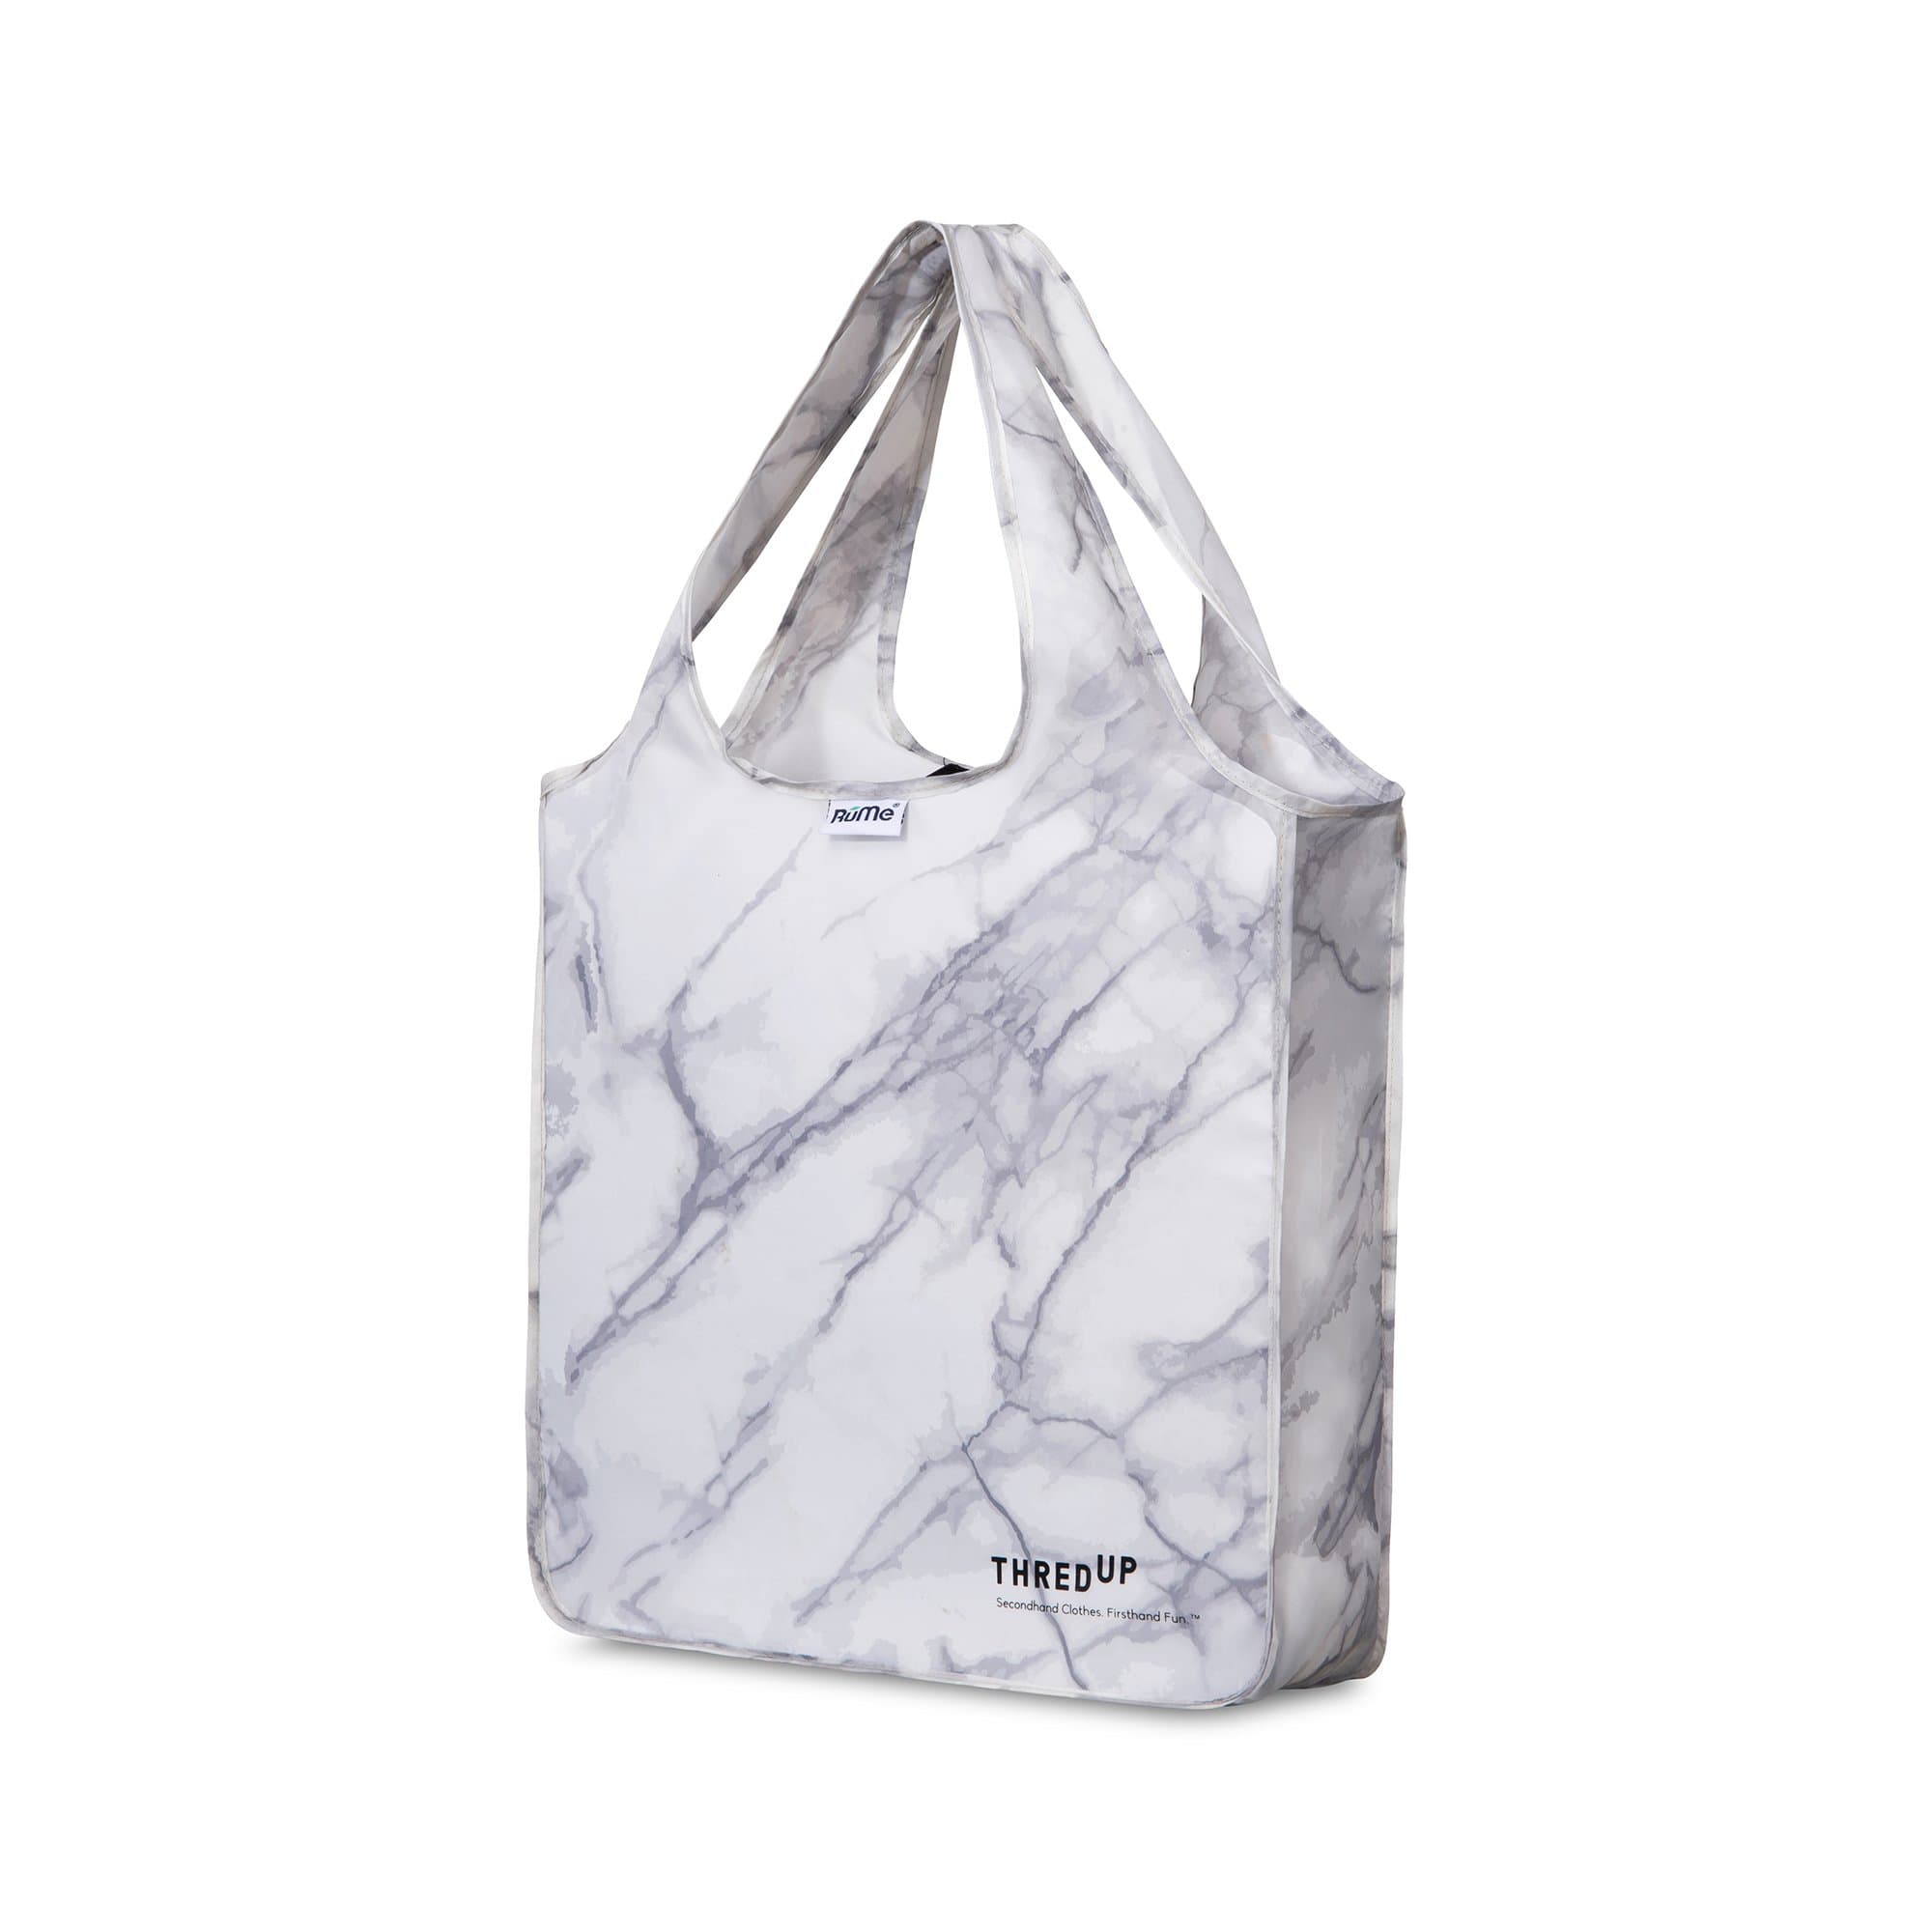 FLP tote bag Medium / grey ( original)